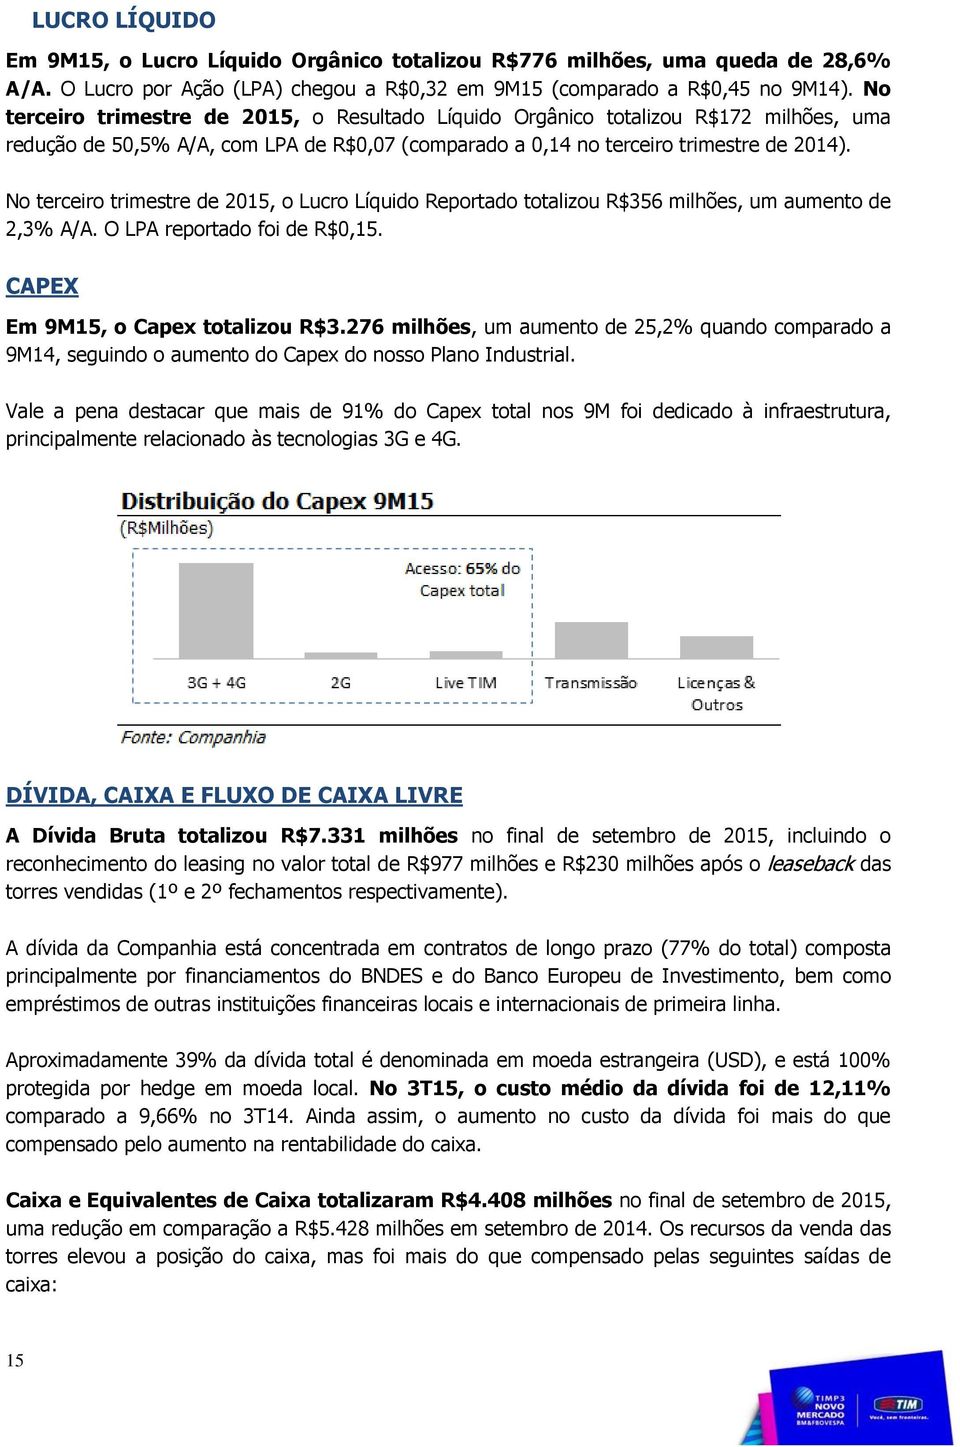 No terceiro trimestre de 2015, o Lucro Líquido Reportado totalizou R$356 milhões, um aumento de 2,3% A/A. O LPA reportado foi de R$0,15. CAPEX Em 9M15, o Capex totalizou R$3.